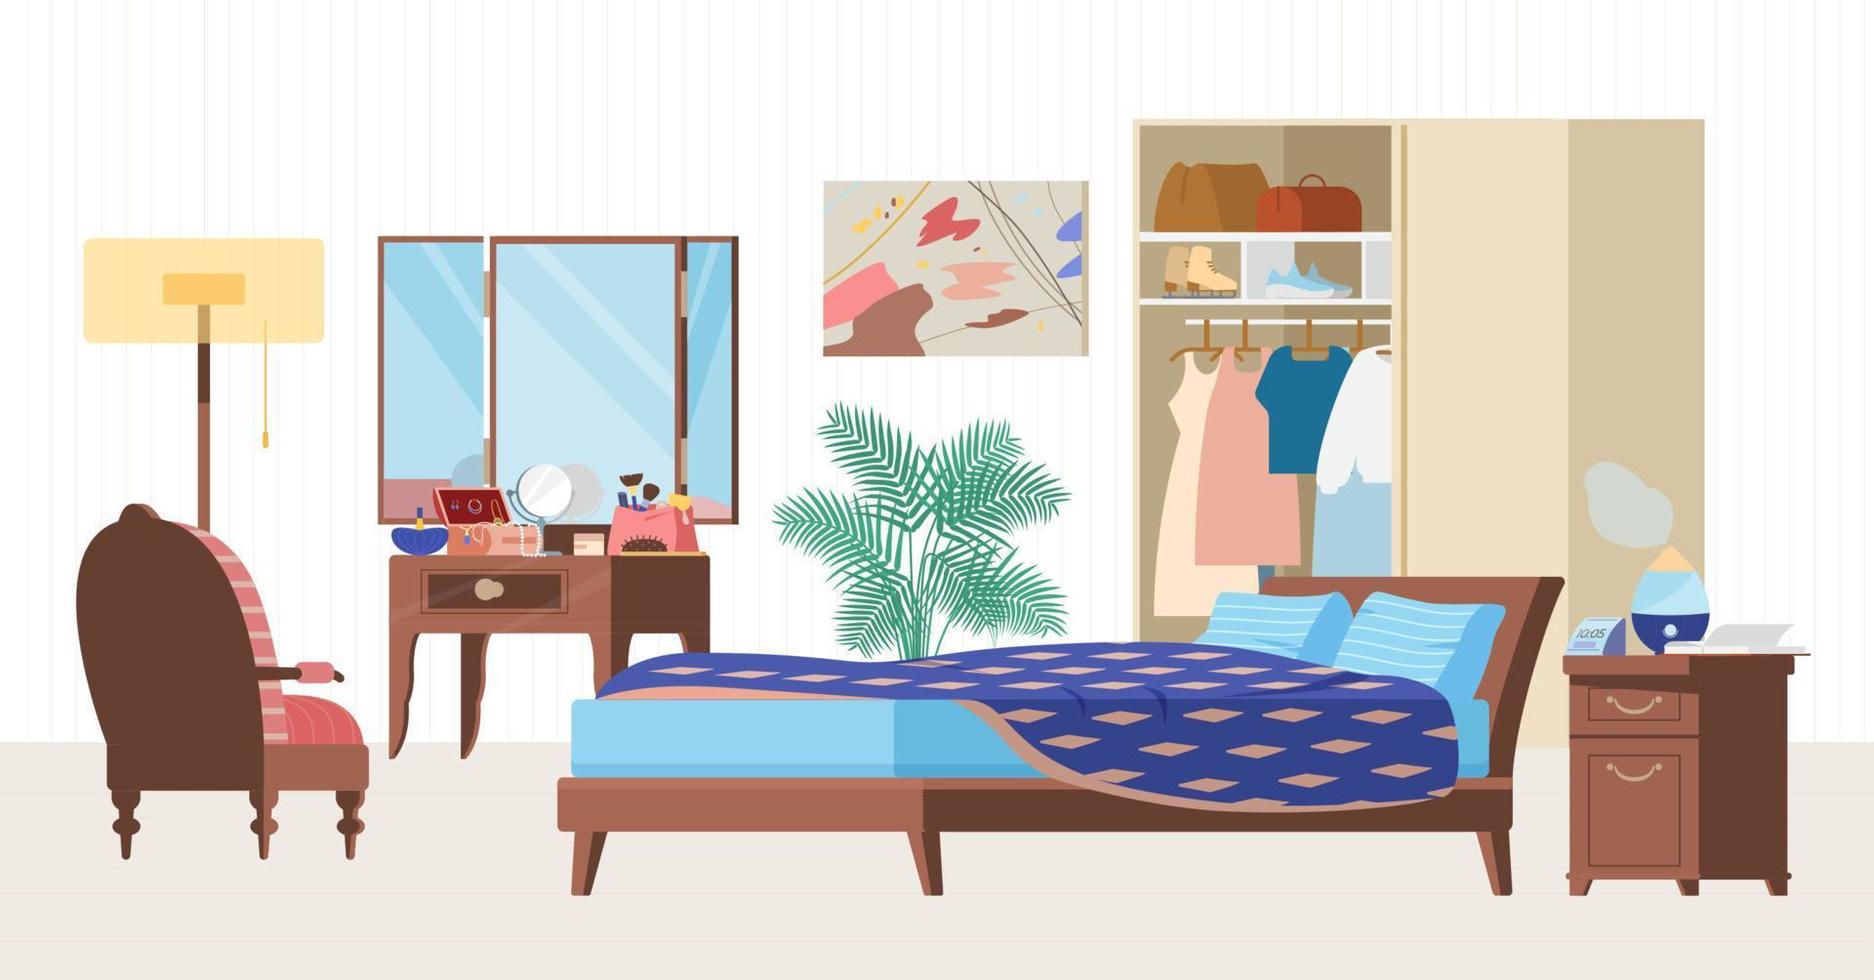 gezellige slaapkamer interieur platte vectorillustratie. houten meubilair, bed, fauteuil, kaptafel, kledingkast met kleding, nachtkastje met luchtbevochtiger, klok, plant. vector